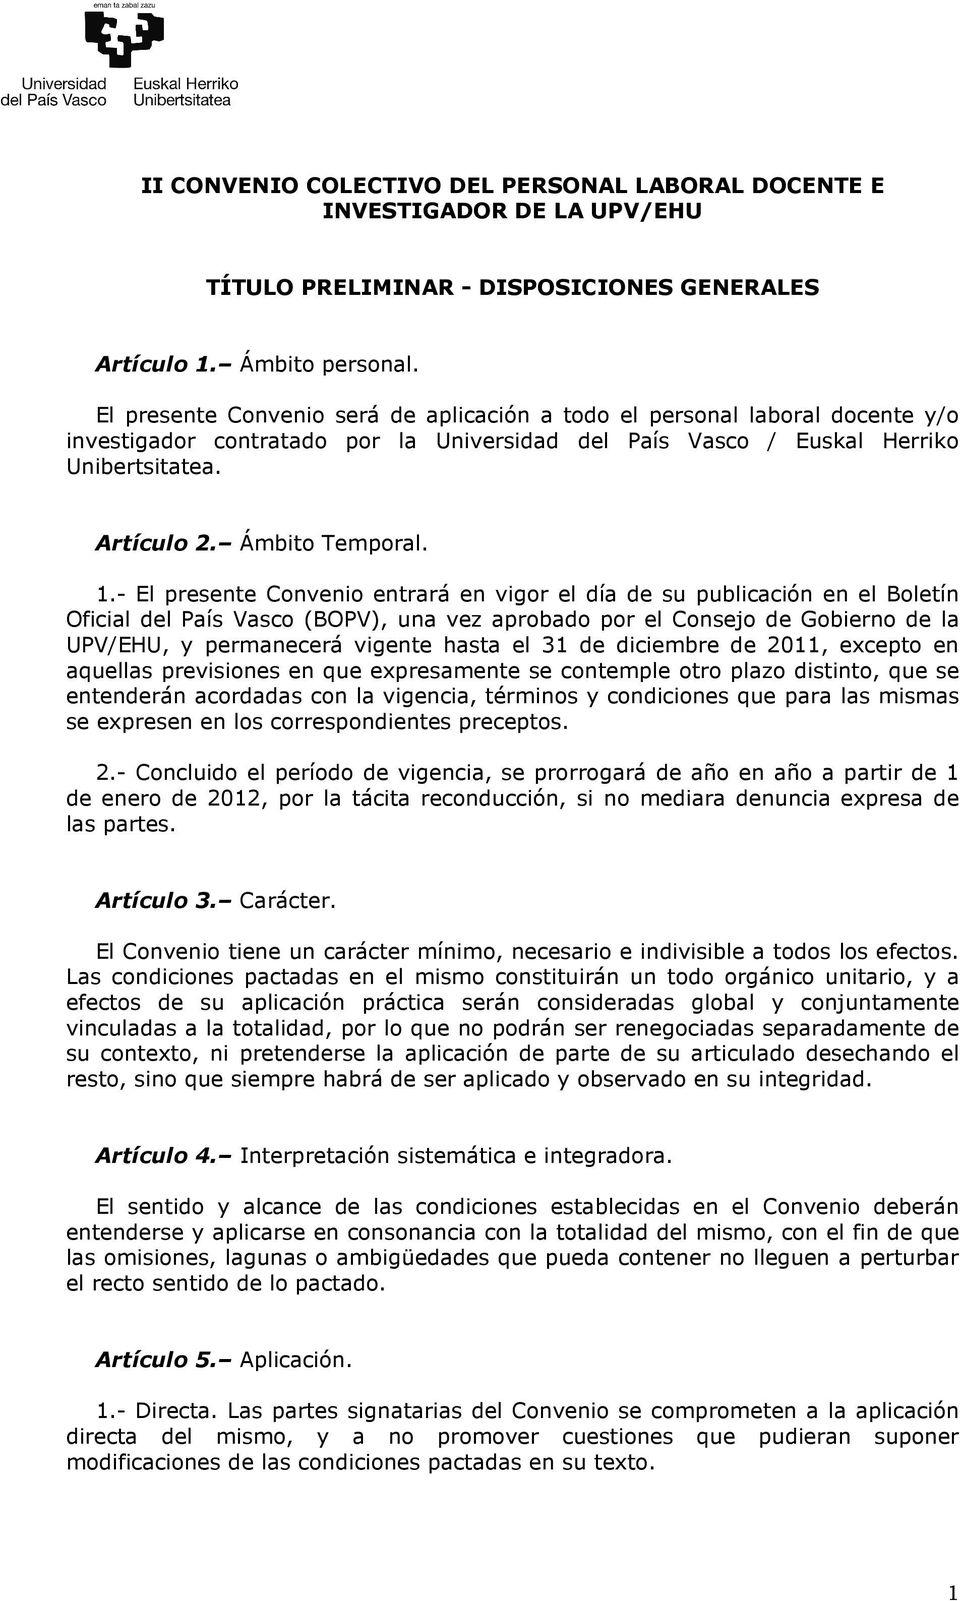 1.- El presente Convenio entrará en vigor el día de su publicación en el Boletín Oficial del País Vasco (BOPV), una vez aprobado por el Consejo de Gobierno de la UPV/EHU, y permanecerá vigente hasta